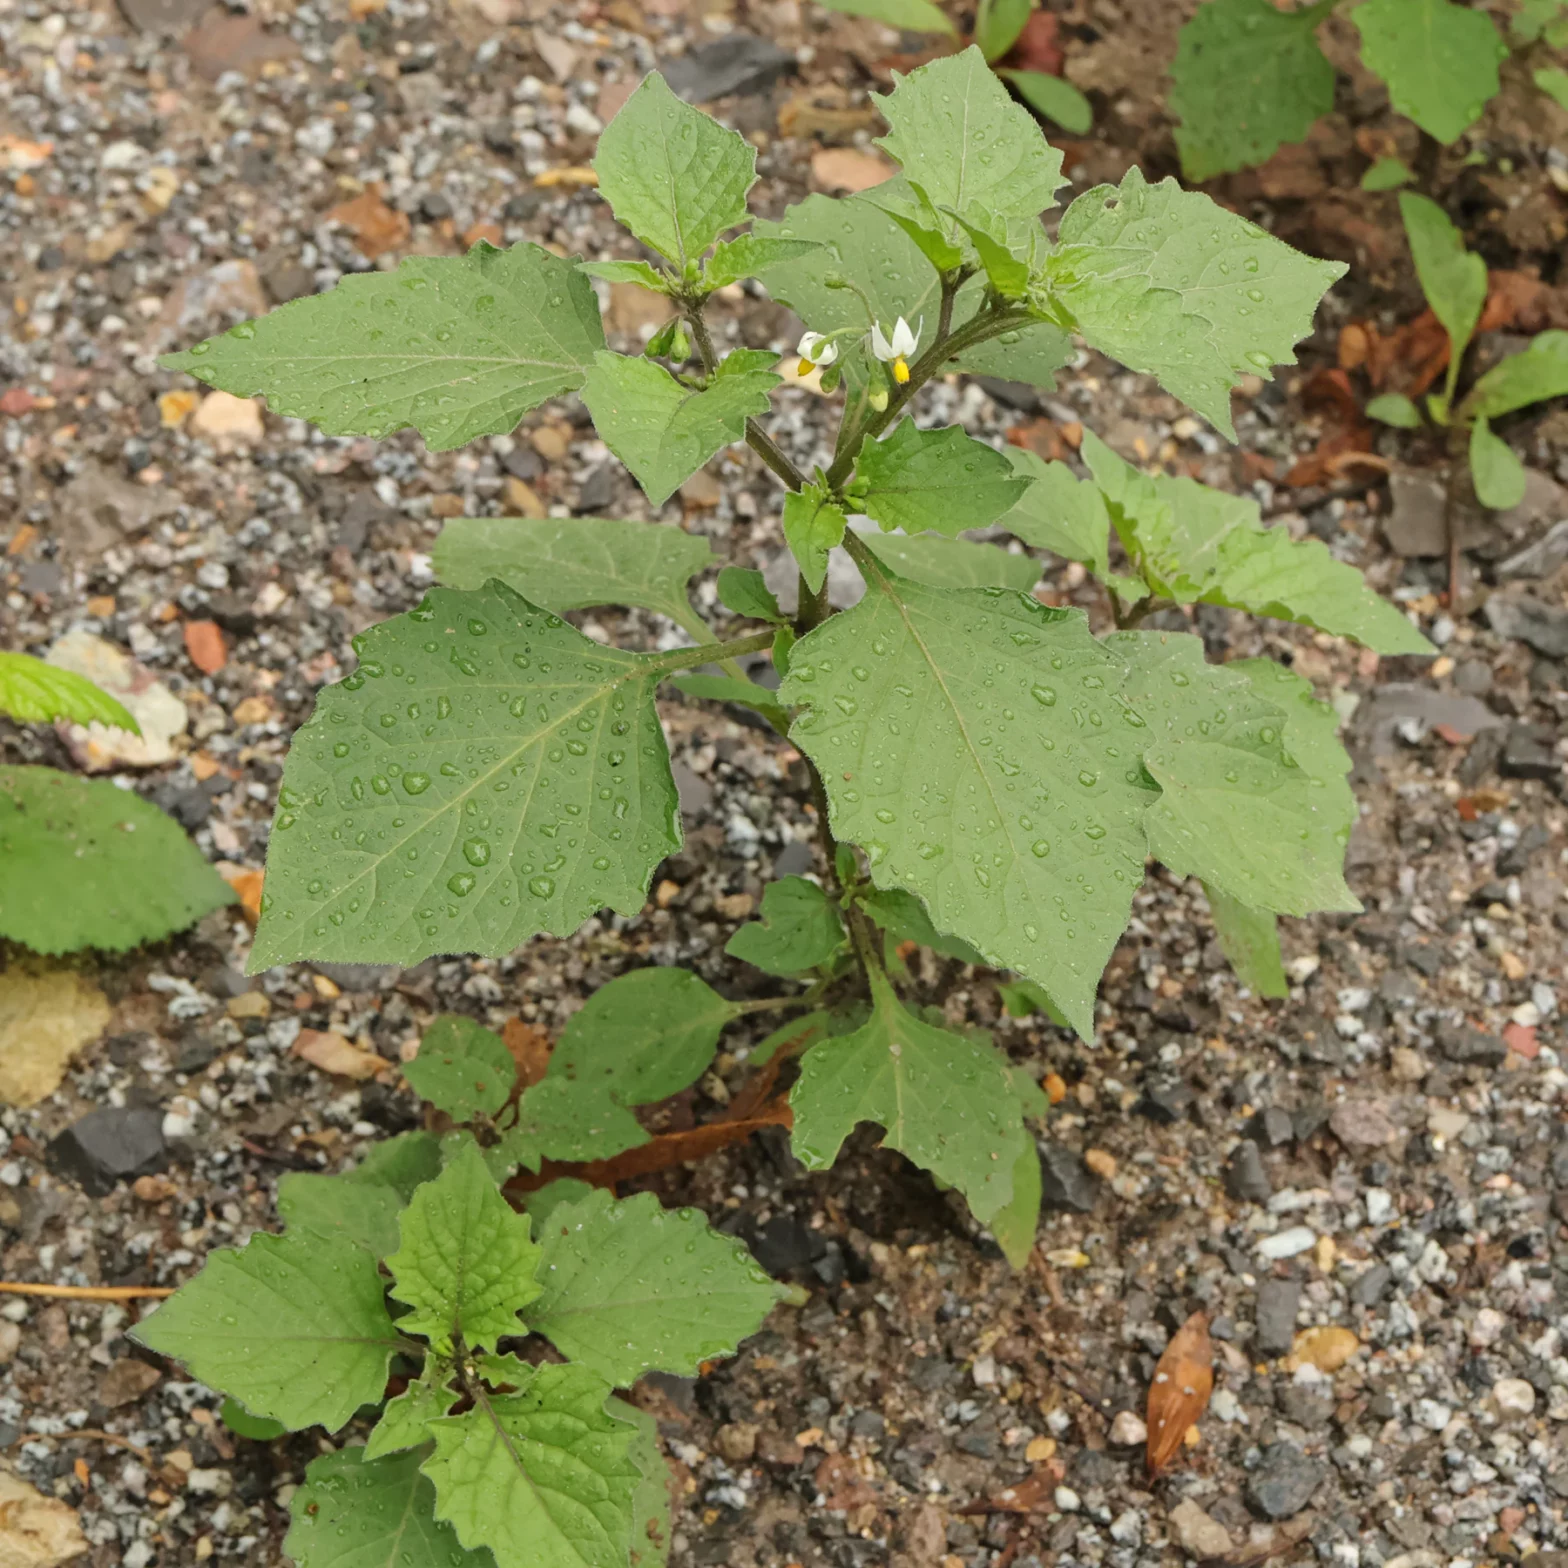 Solanum nigrum leaves